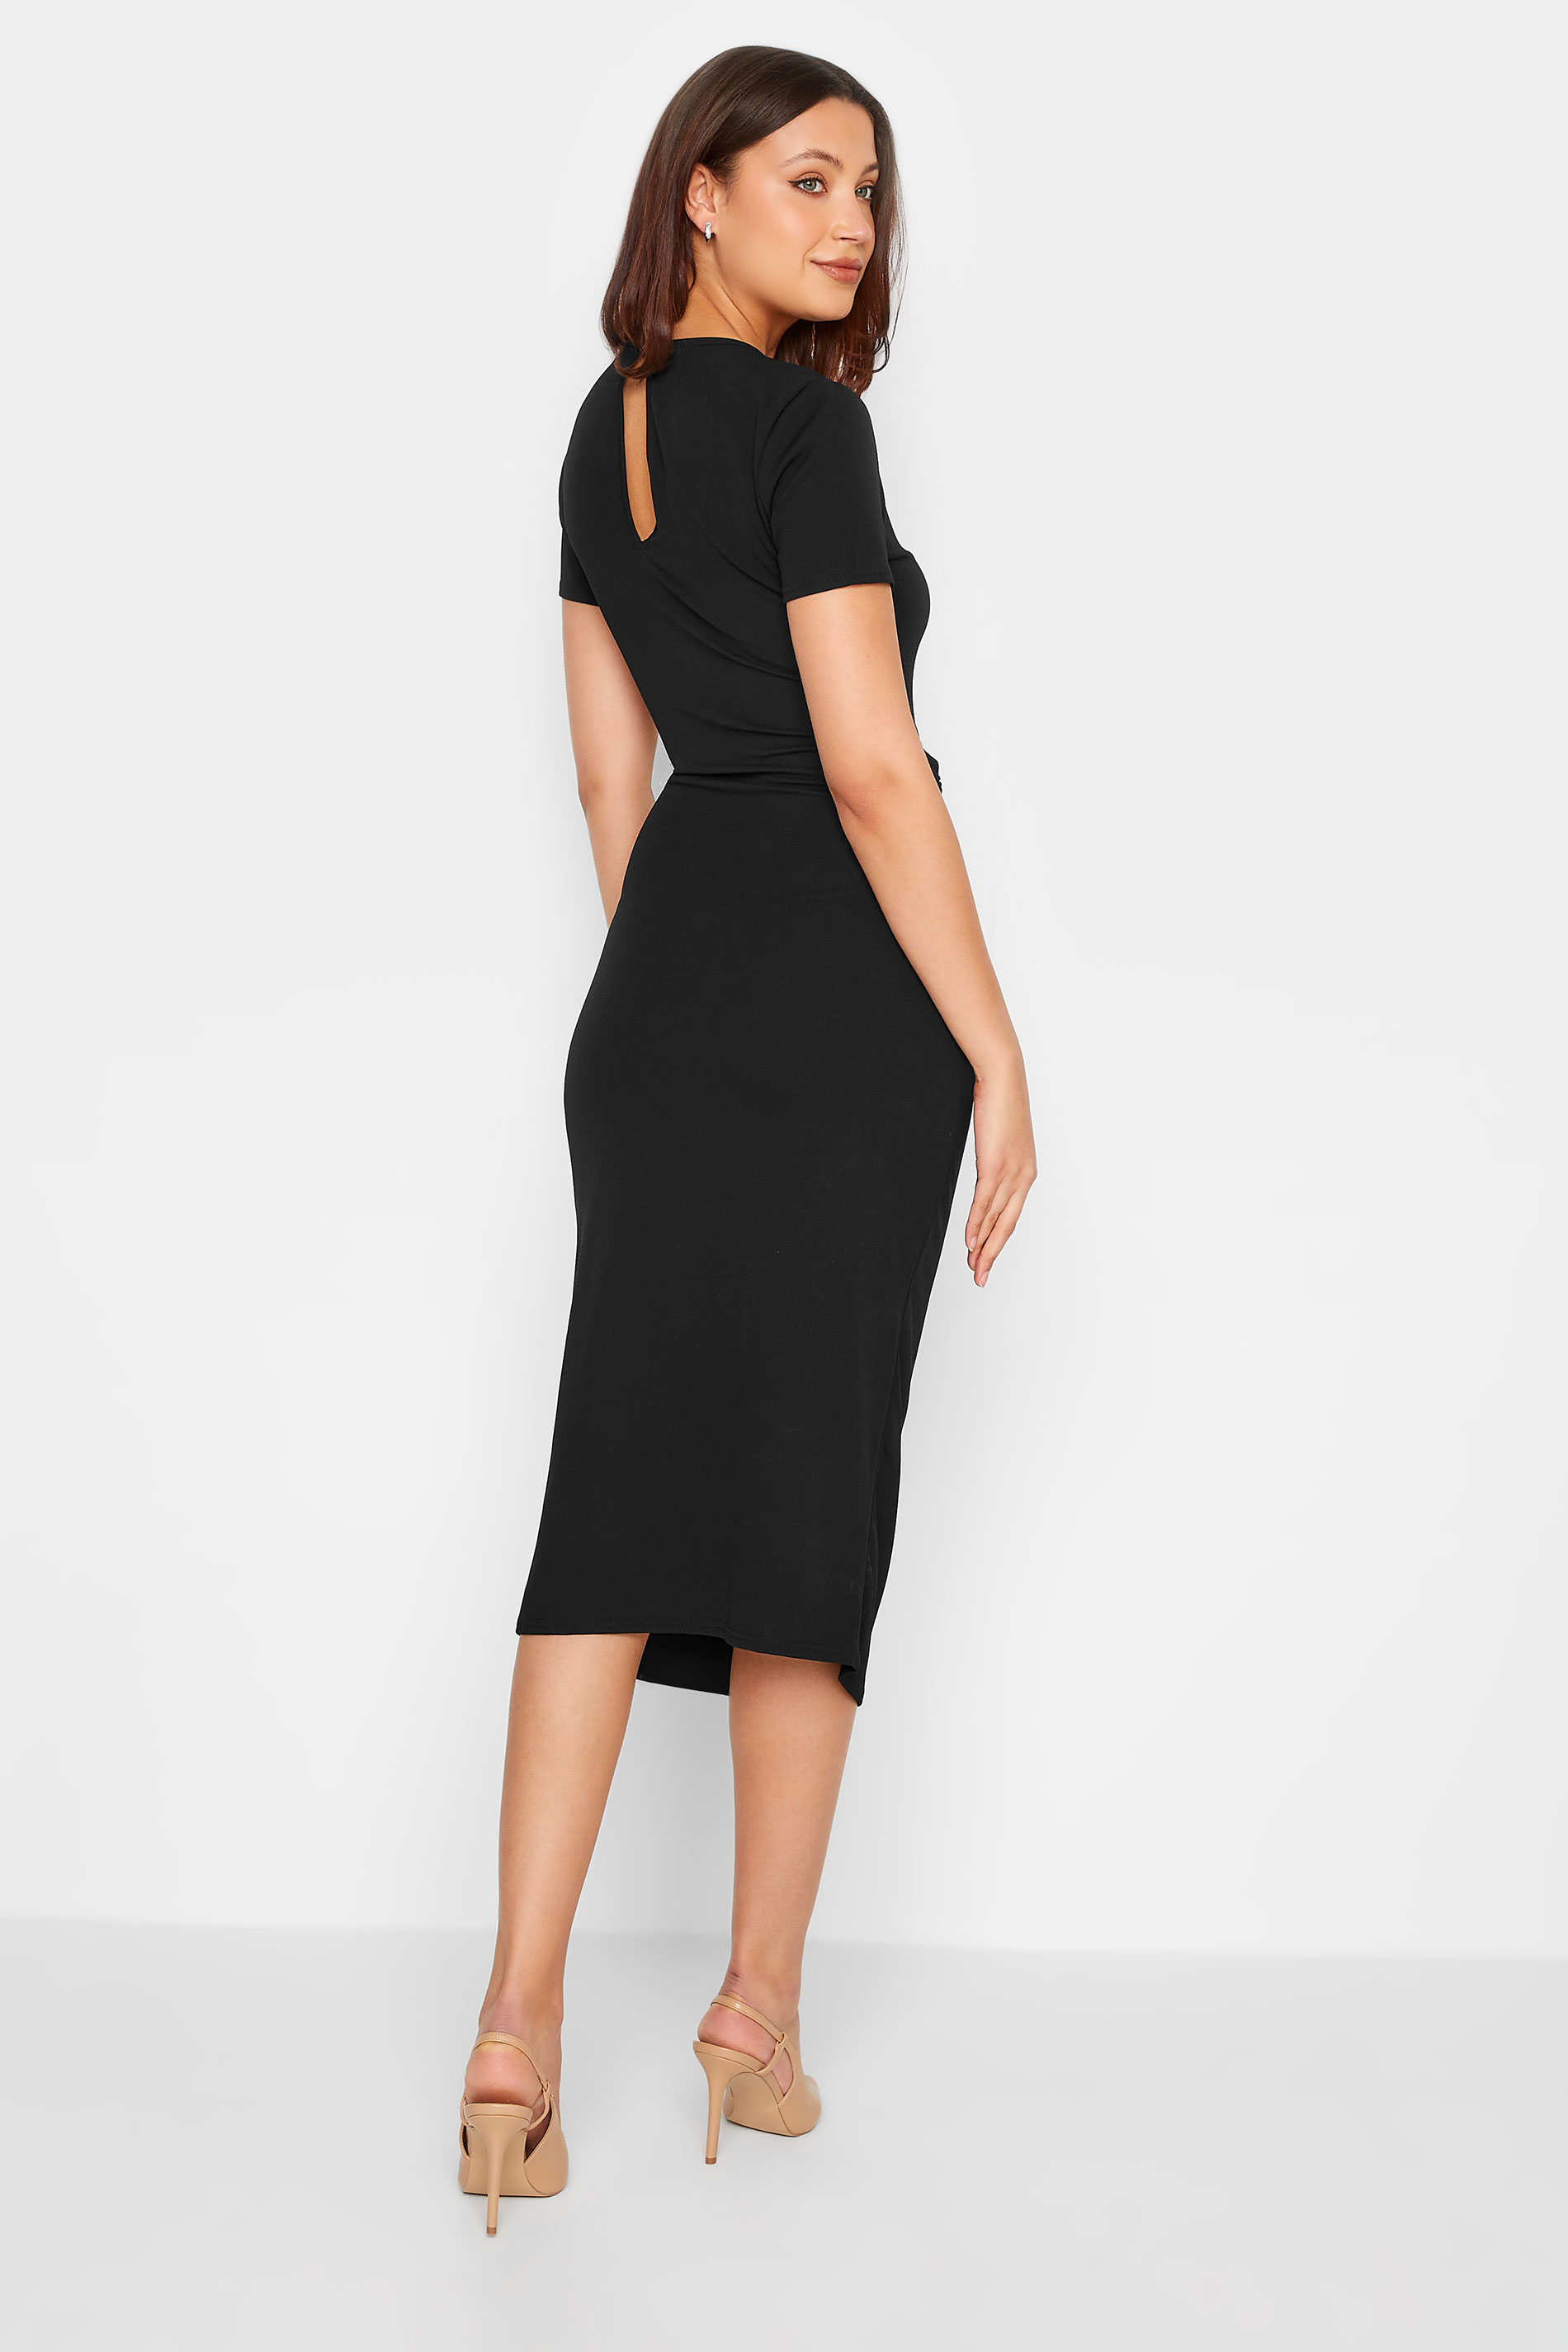 LTS Tall Black Twist Midi Dress | Long Tall Sally  3